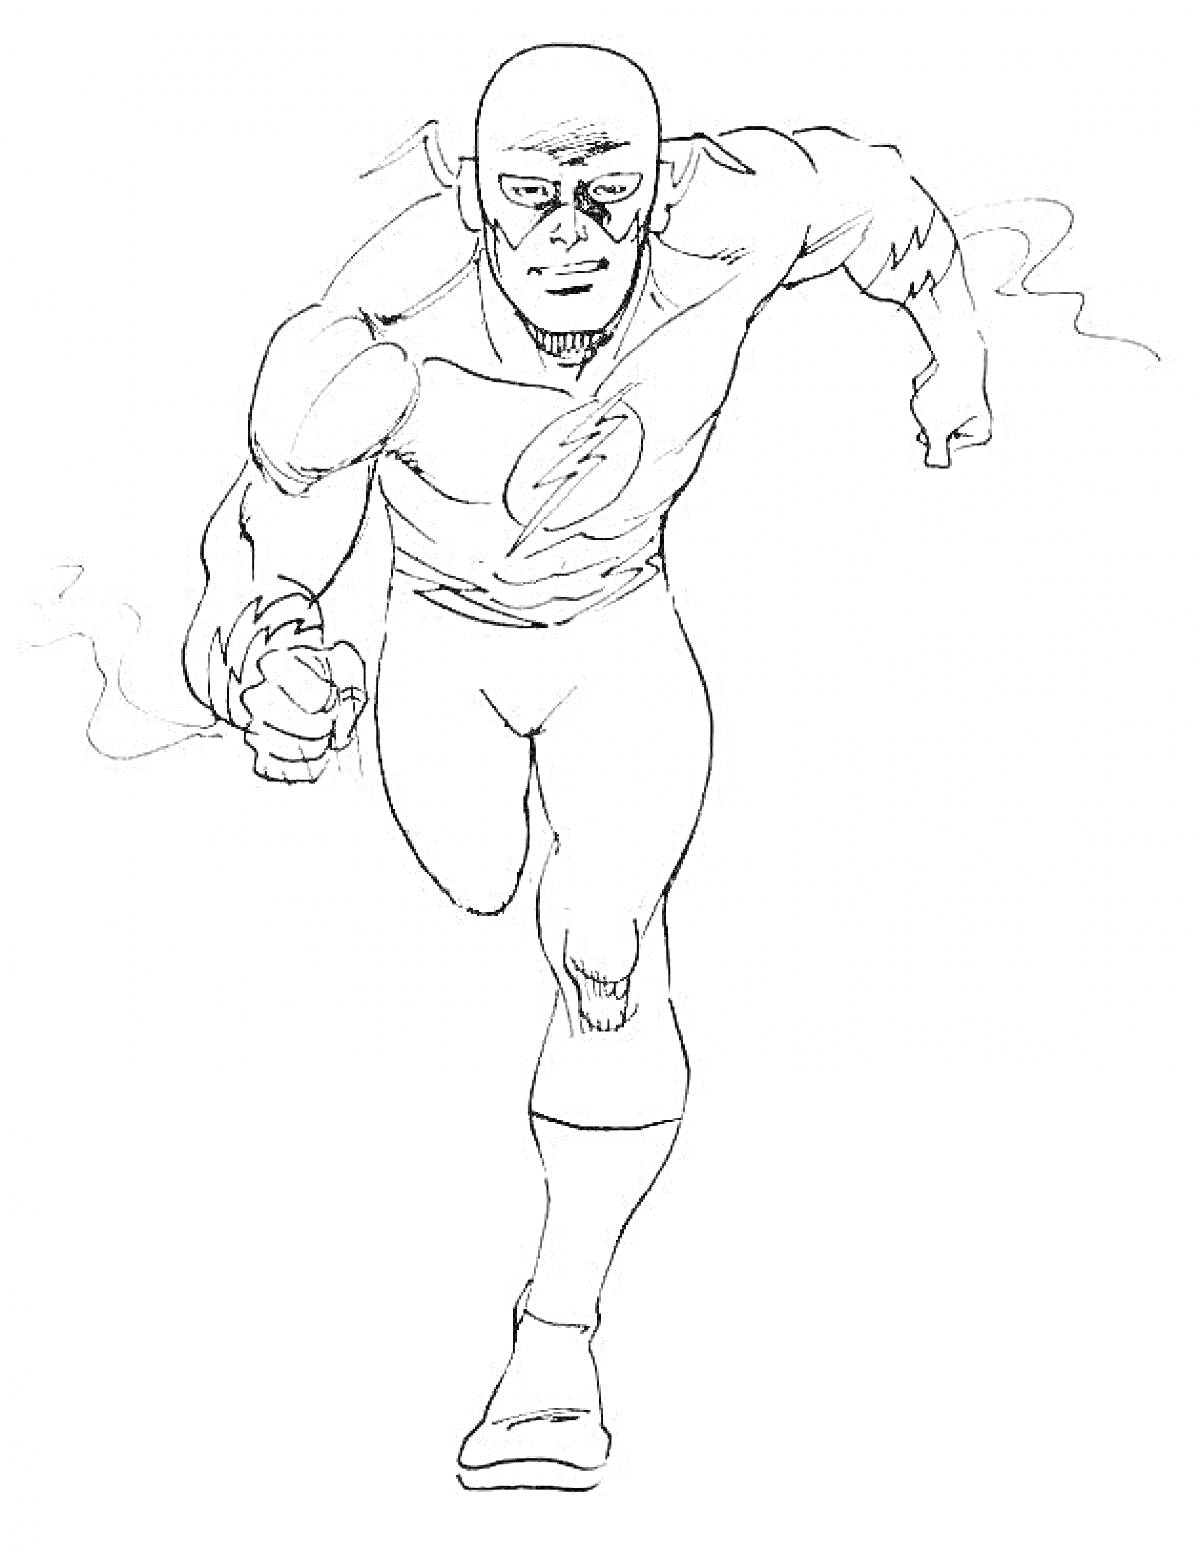 Раскраска Флэш в полный рост, бегущий вперед, со световой эмблемой на груди, в классическом костюме супергероя